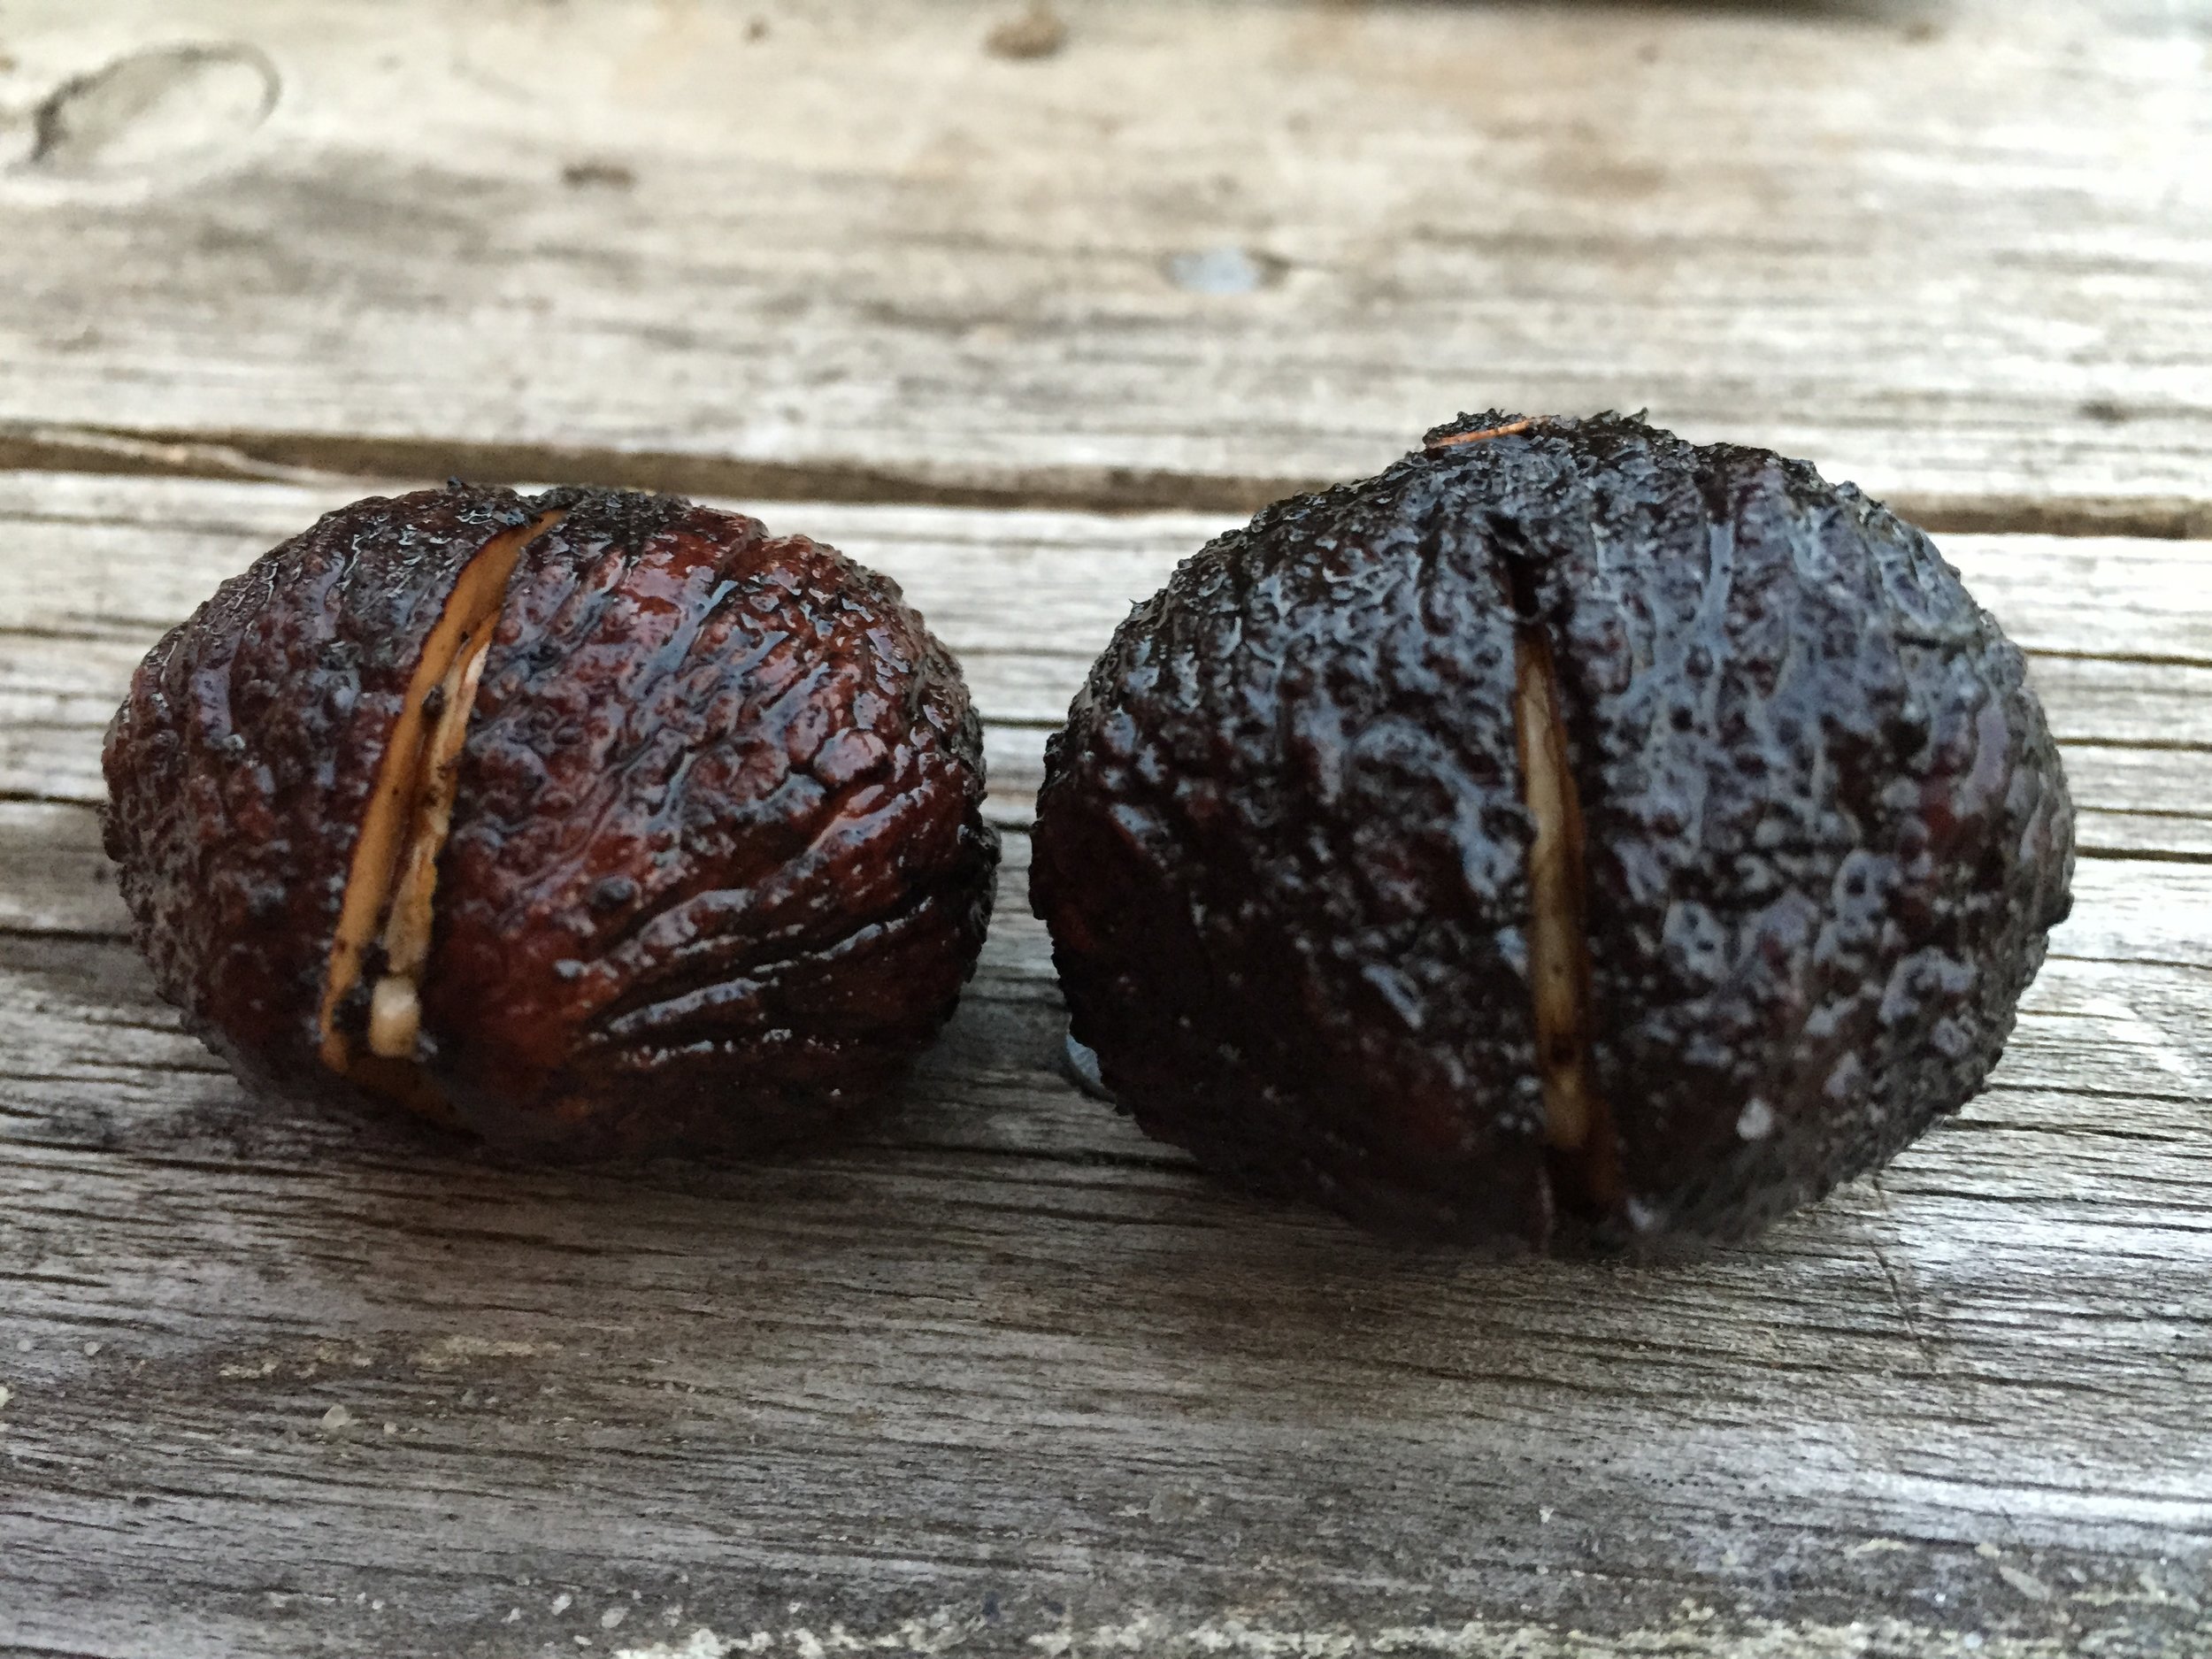 black walnuts germinating